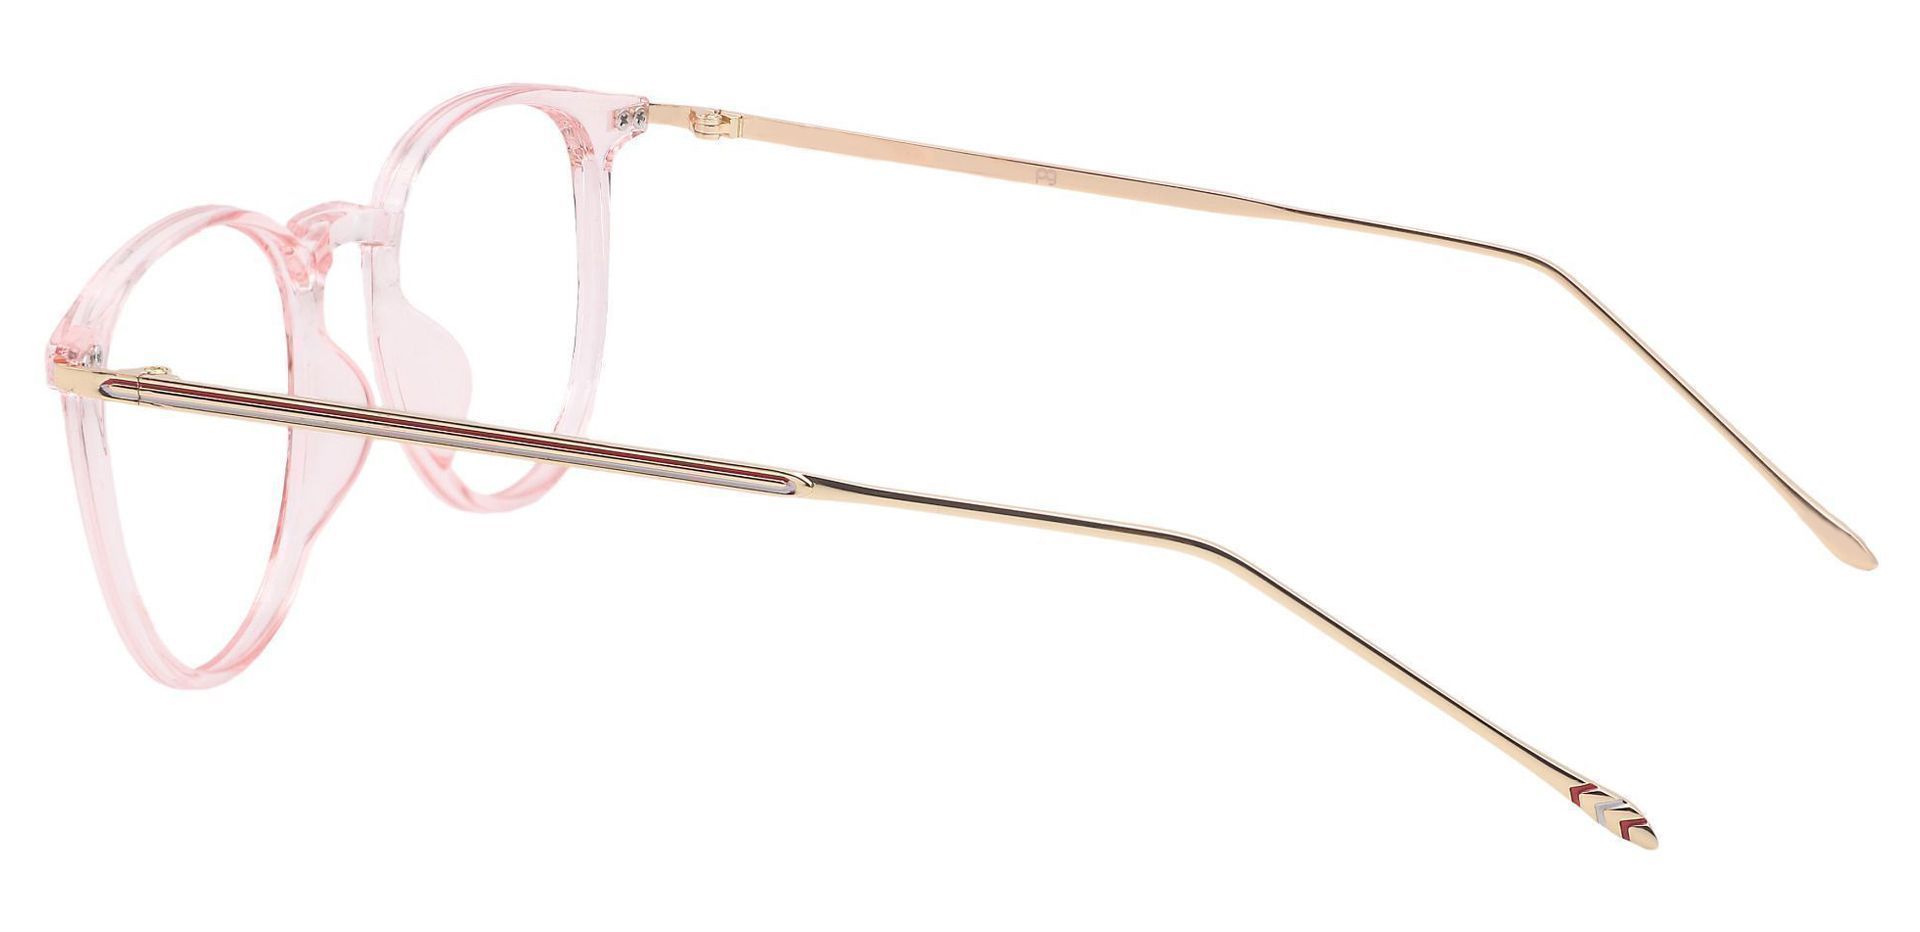 Elliott Round Progressive Glasses - Pink